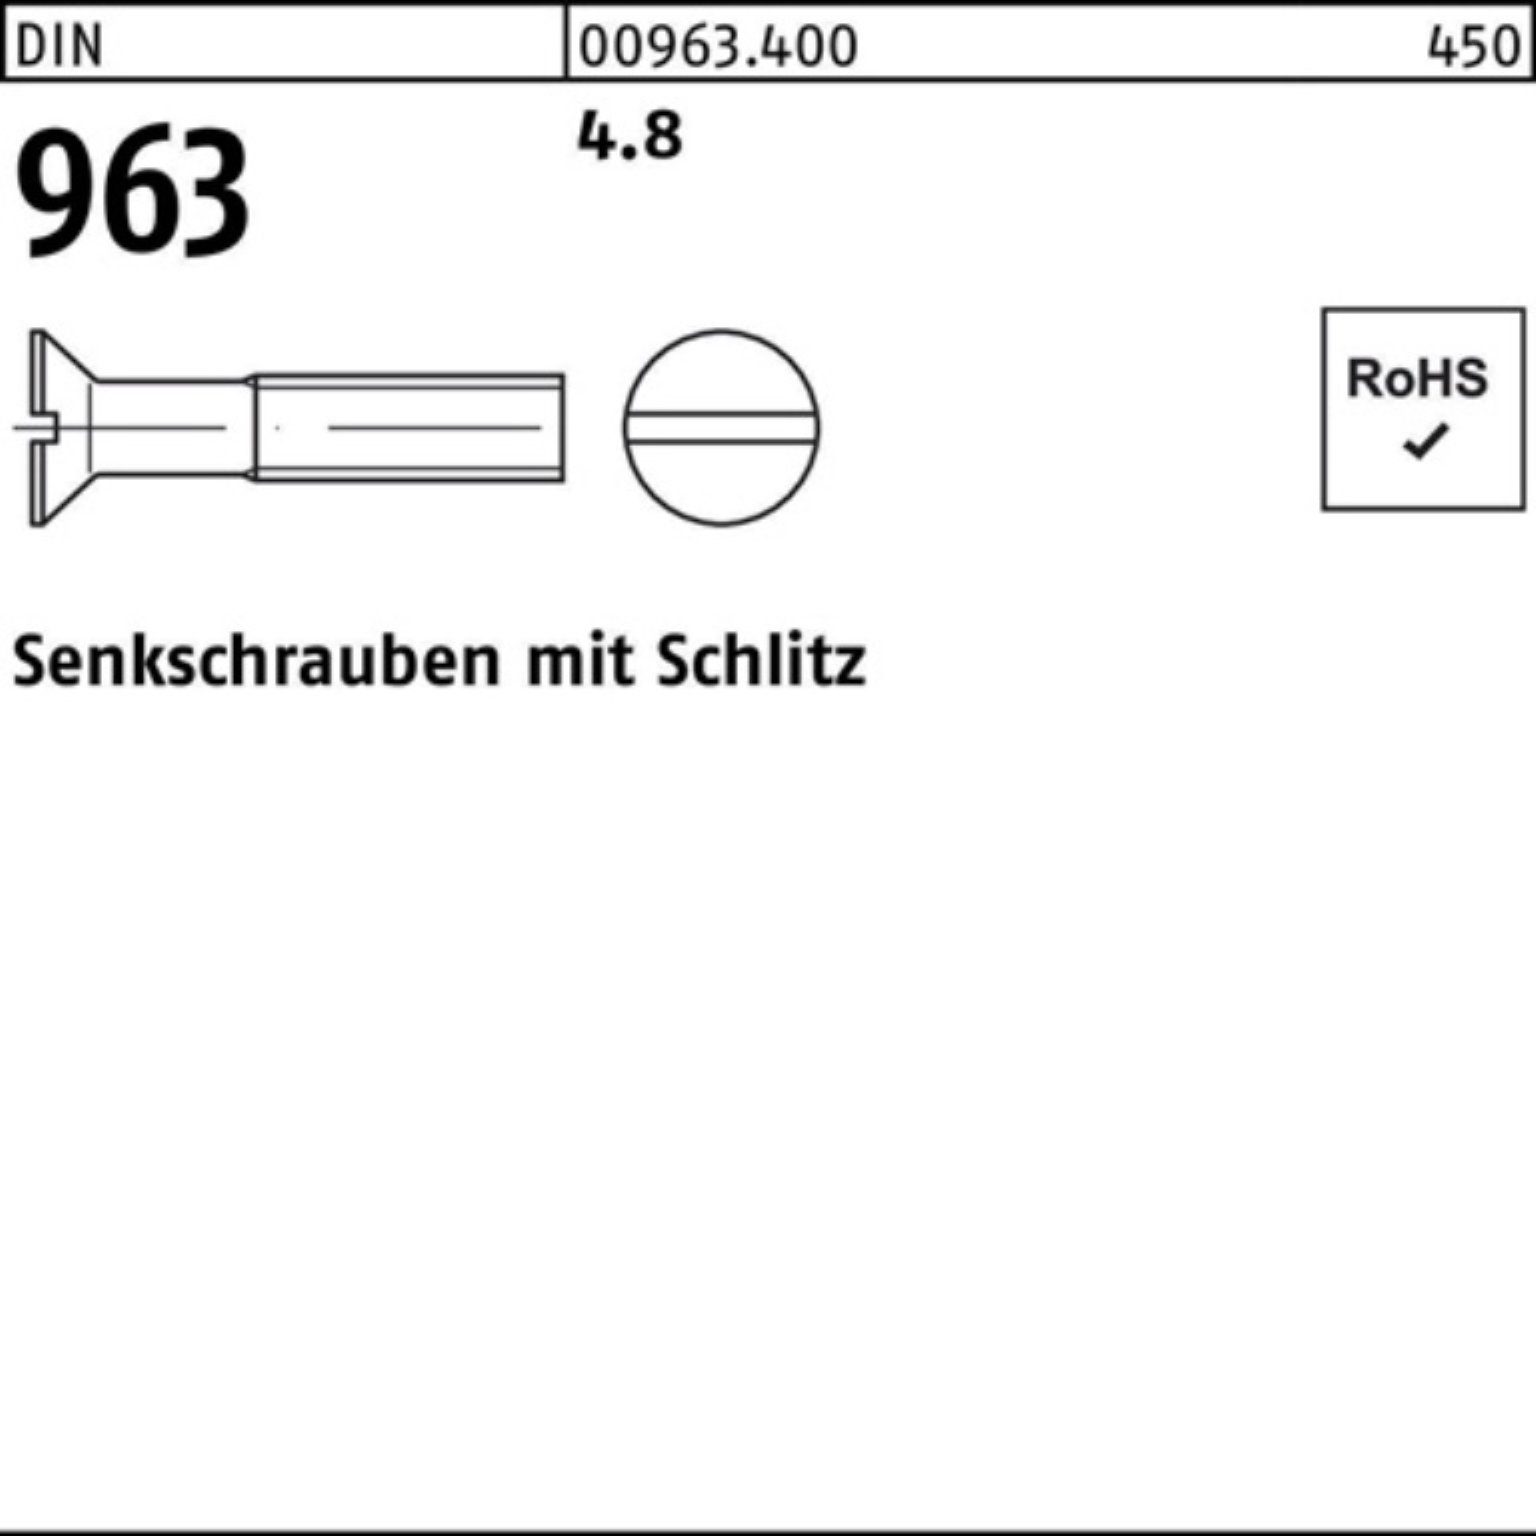 Reyher Senkschraube 100er Pack Senkschraube 4.8 Stück 963 Schlitz 963 DIN DIN 100 M12x 40